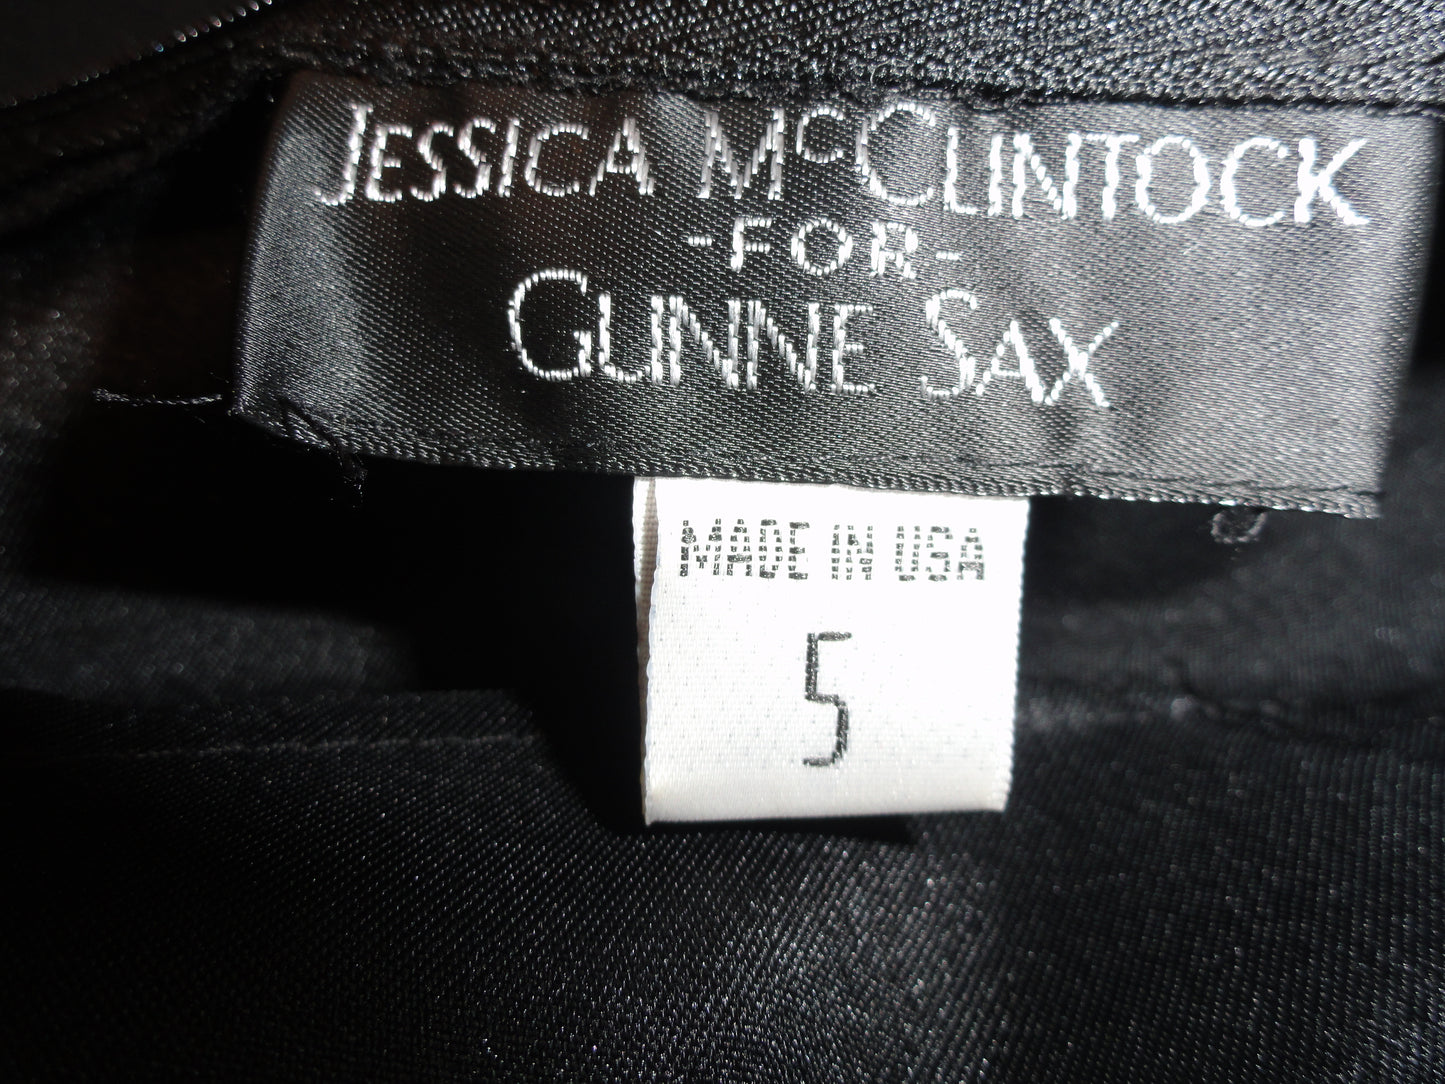 Jessica McClintock 70's Skirt Black Size 5 SKU 000117-14